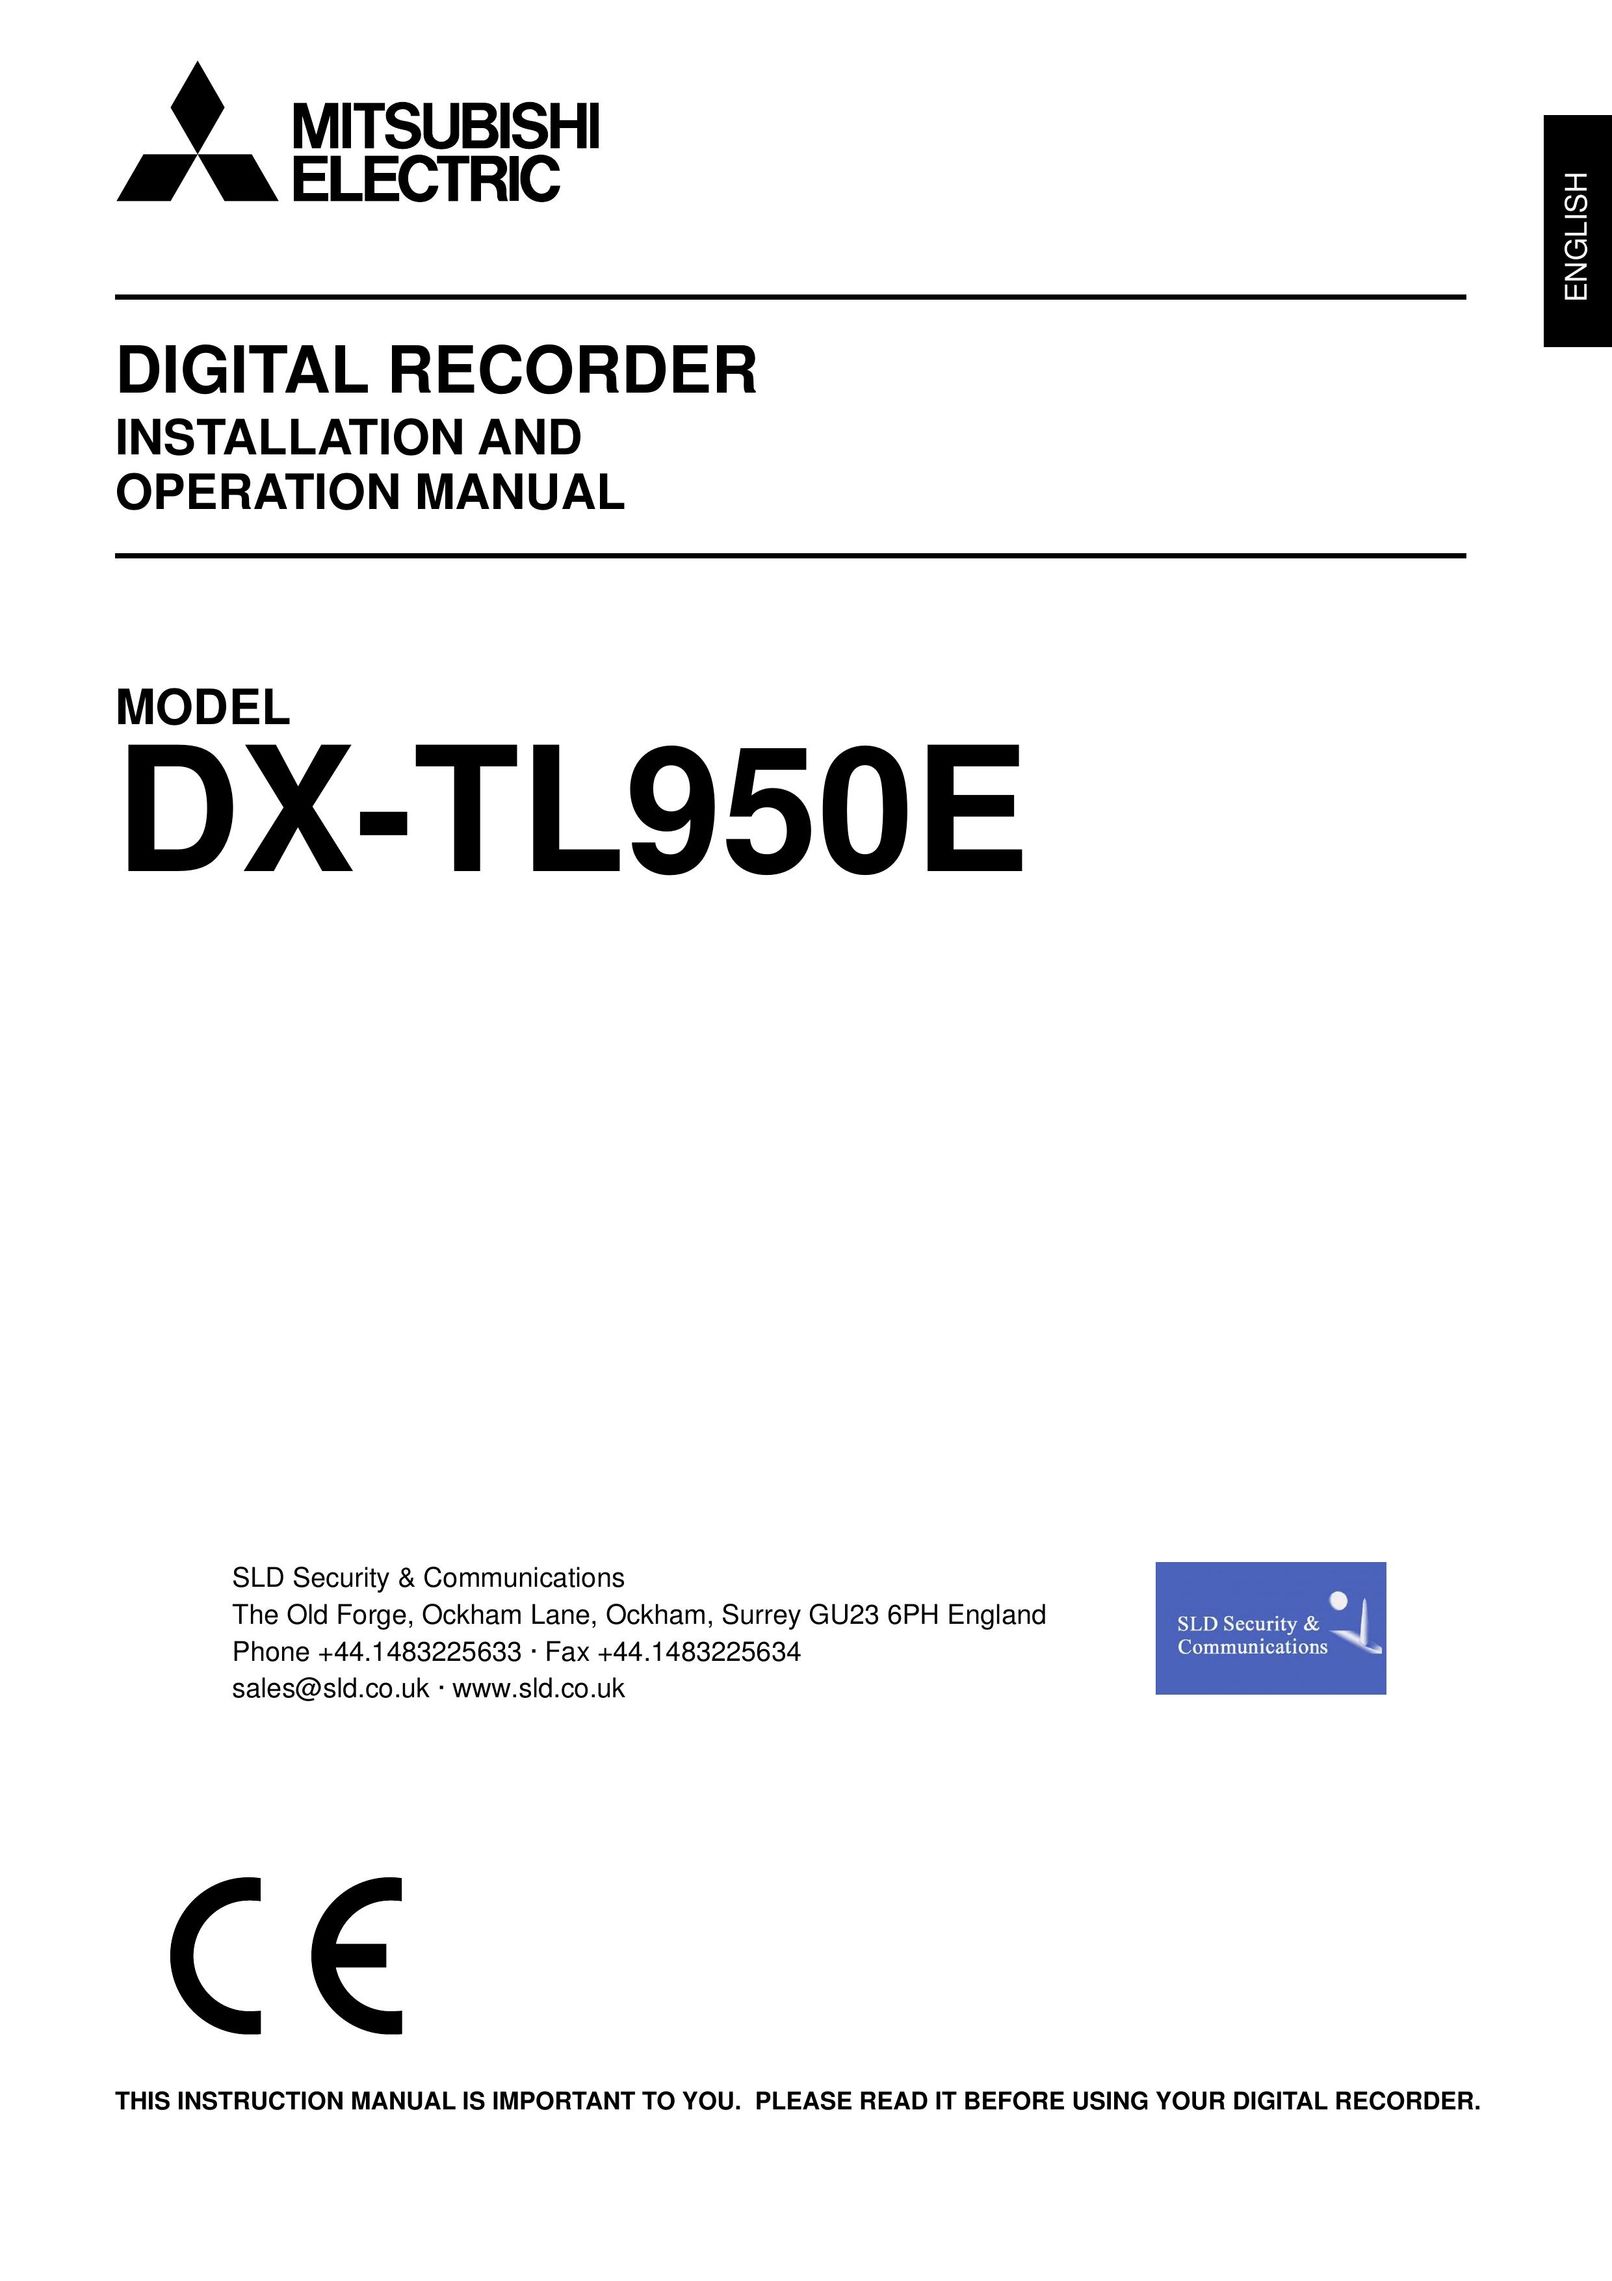 Mitsubishi Electronics DX-TL950E DVR User Manual